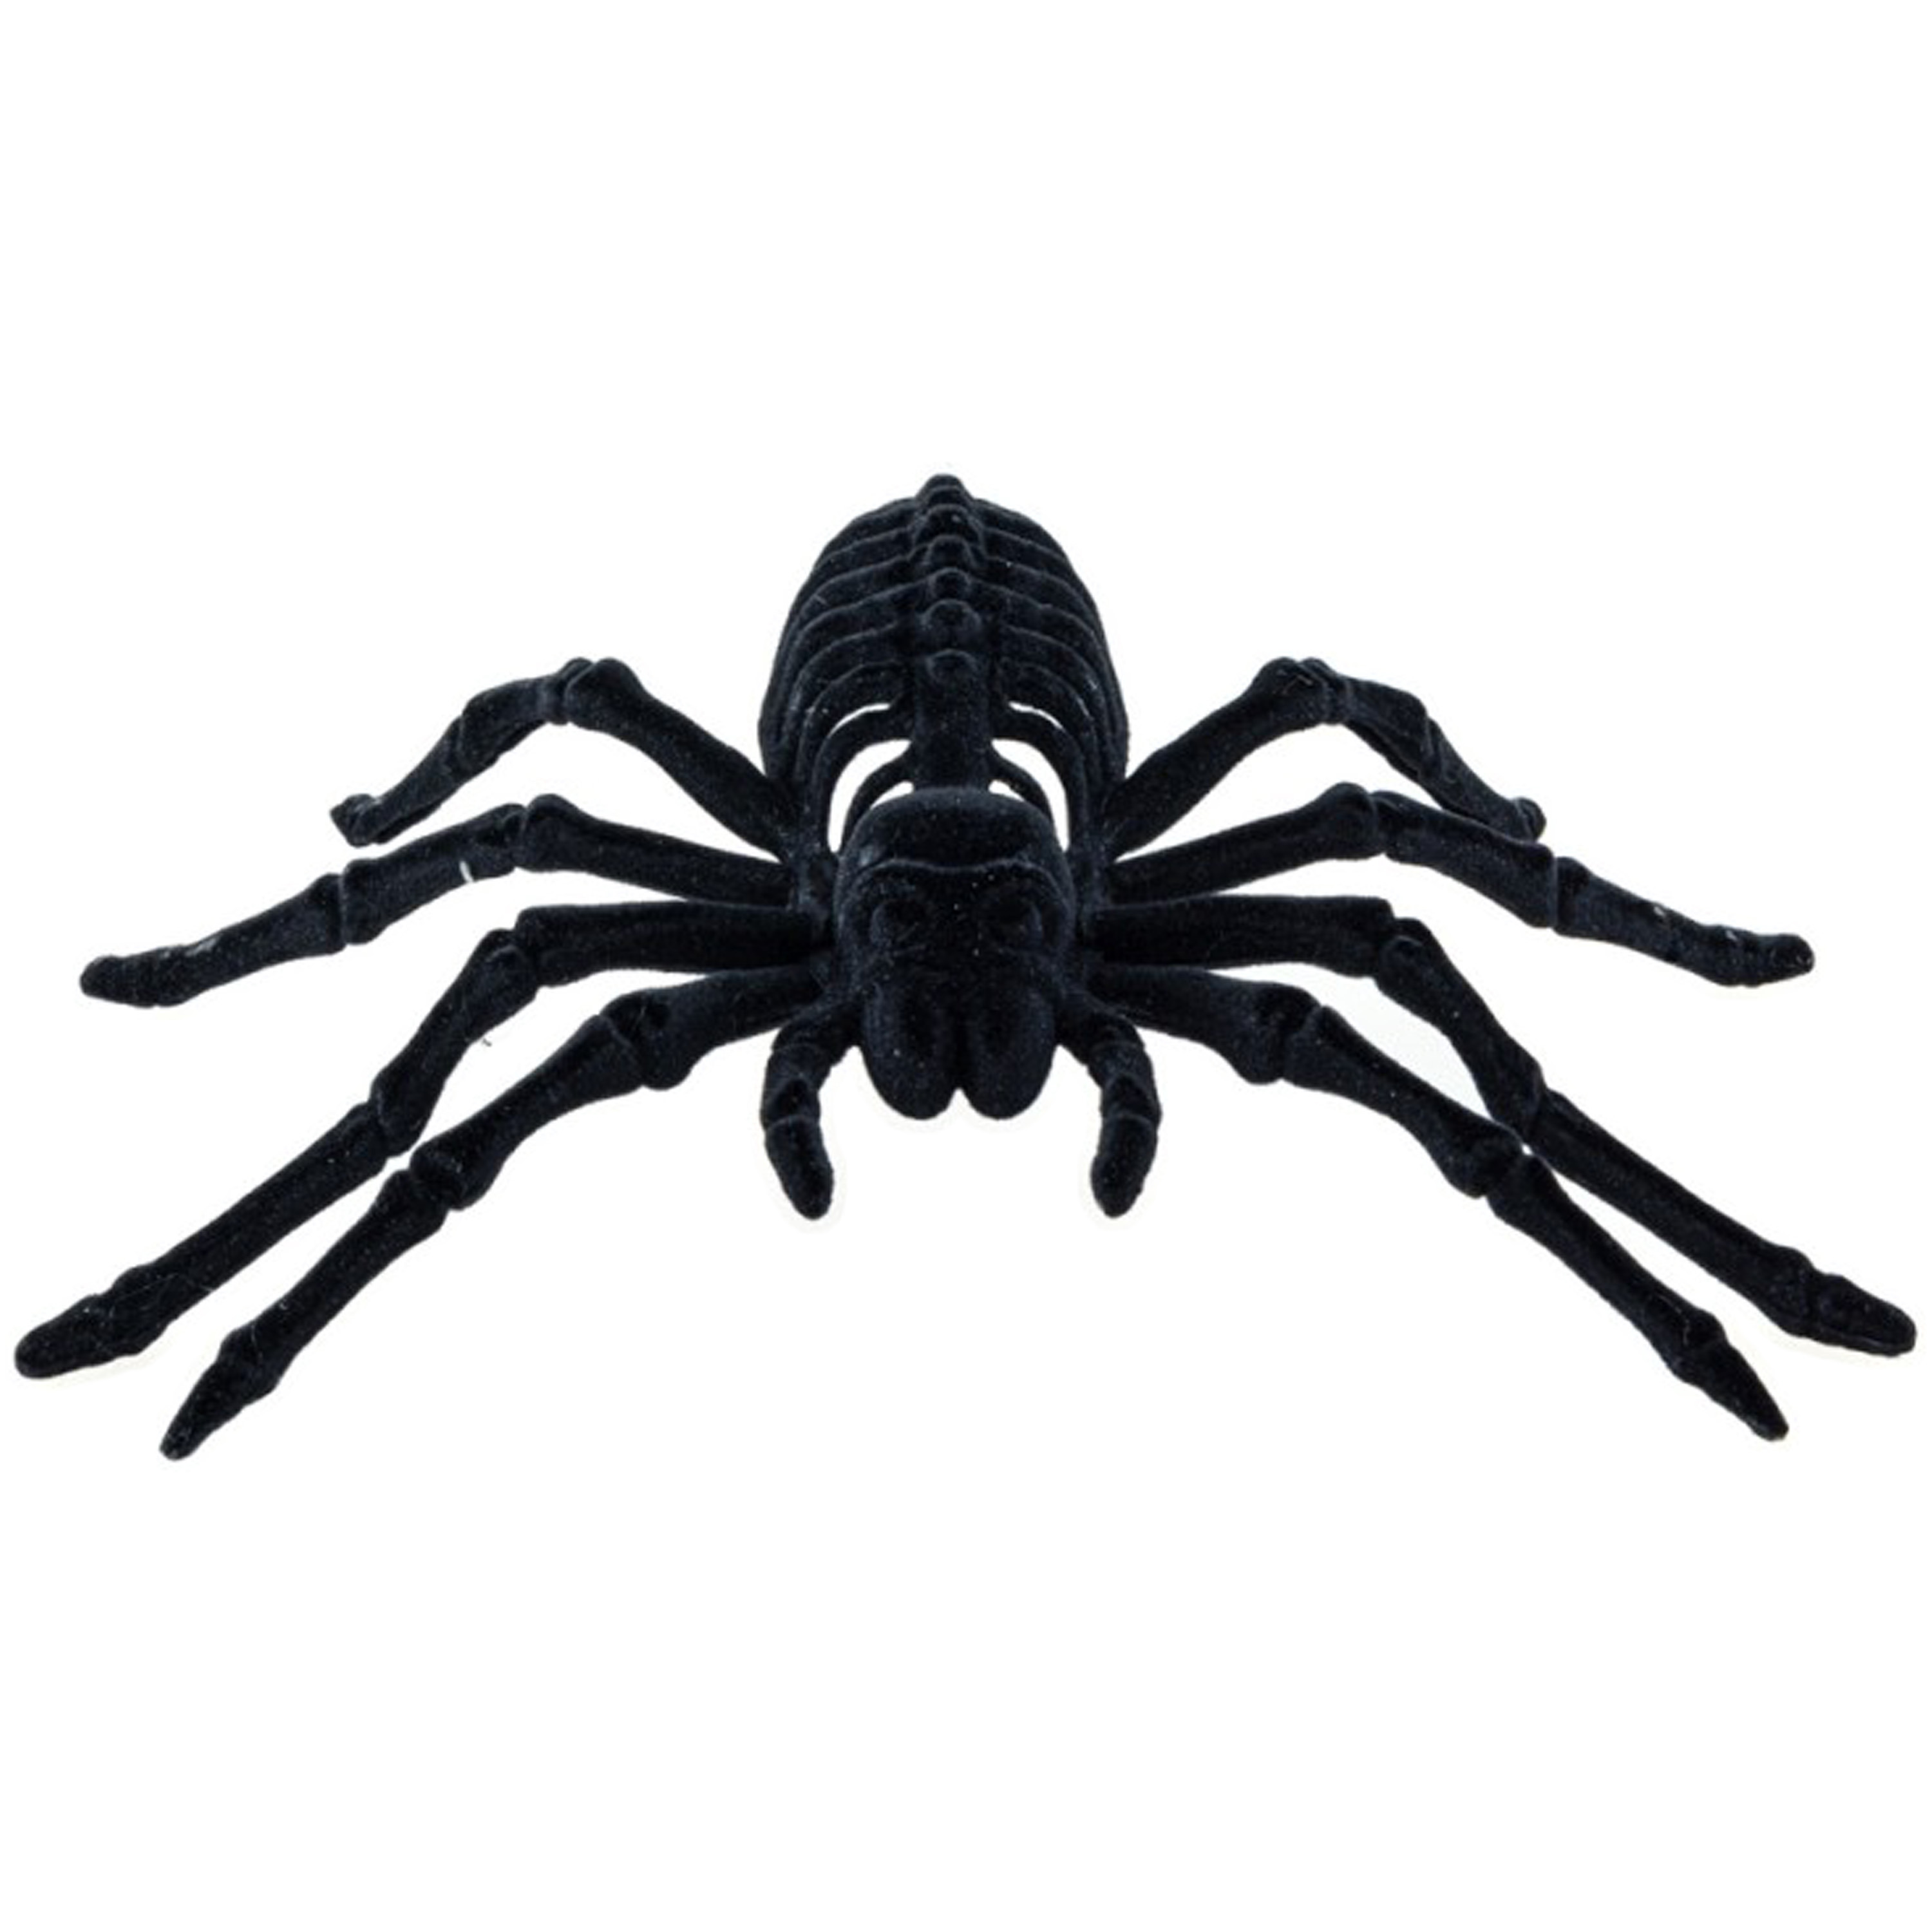 Spin skelet 22 cm zwart velvet-fluweel tarantula Horror-griezel thema decoratie beestjes